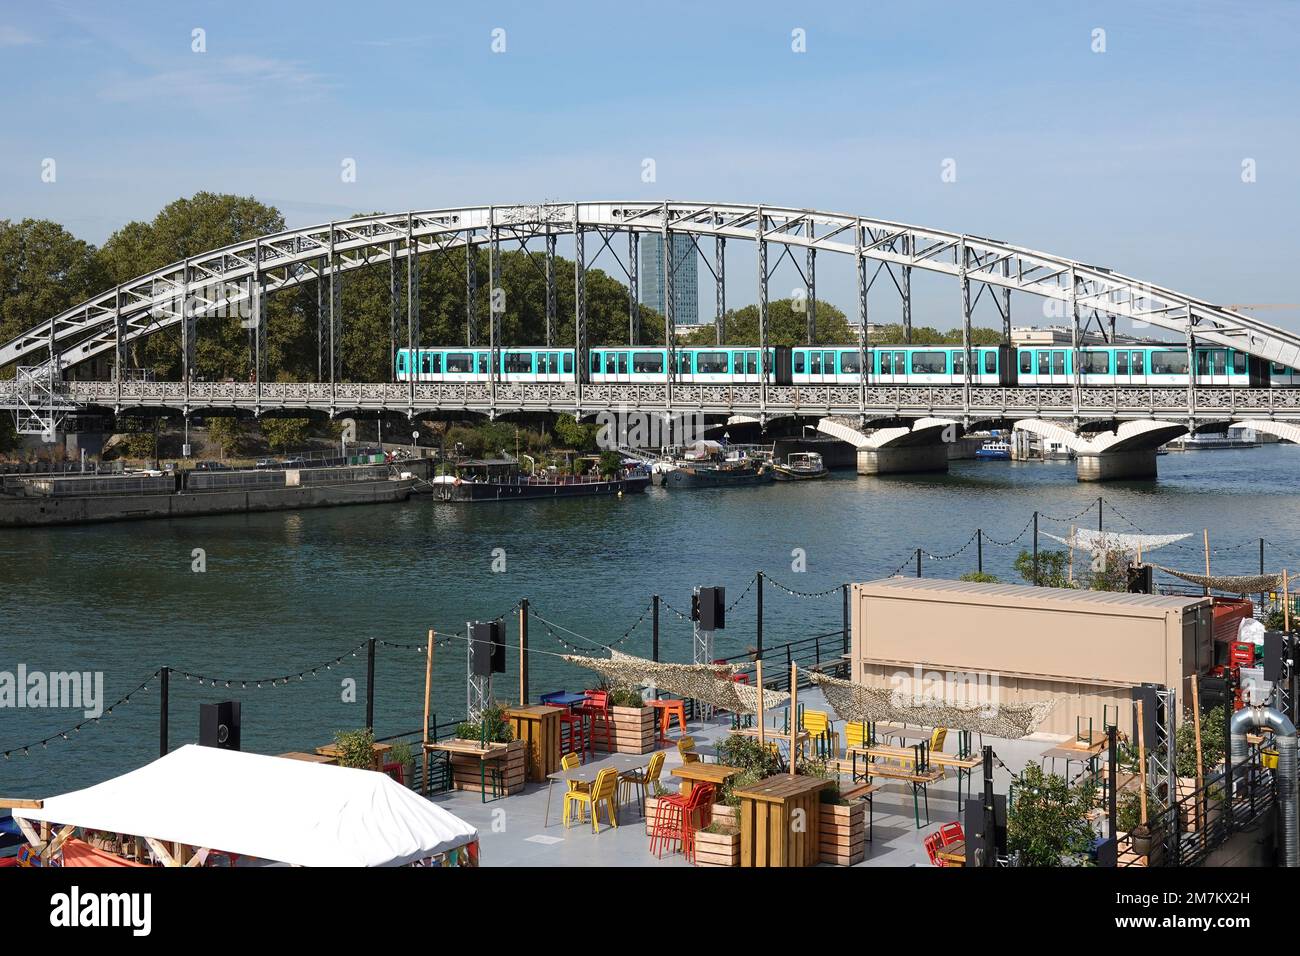 Francia, París, Restaurante flotante en las orillas del río Sena y Viaduc d'Austerlitz (Viaducto de Austerlitz) es un puente ferroviario de una sola cubierta, arco de acero Foto de stock